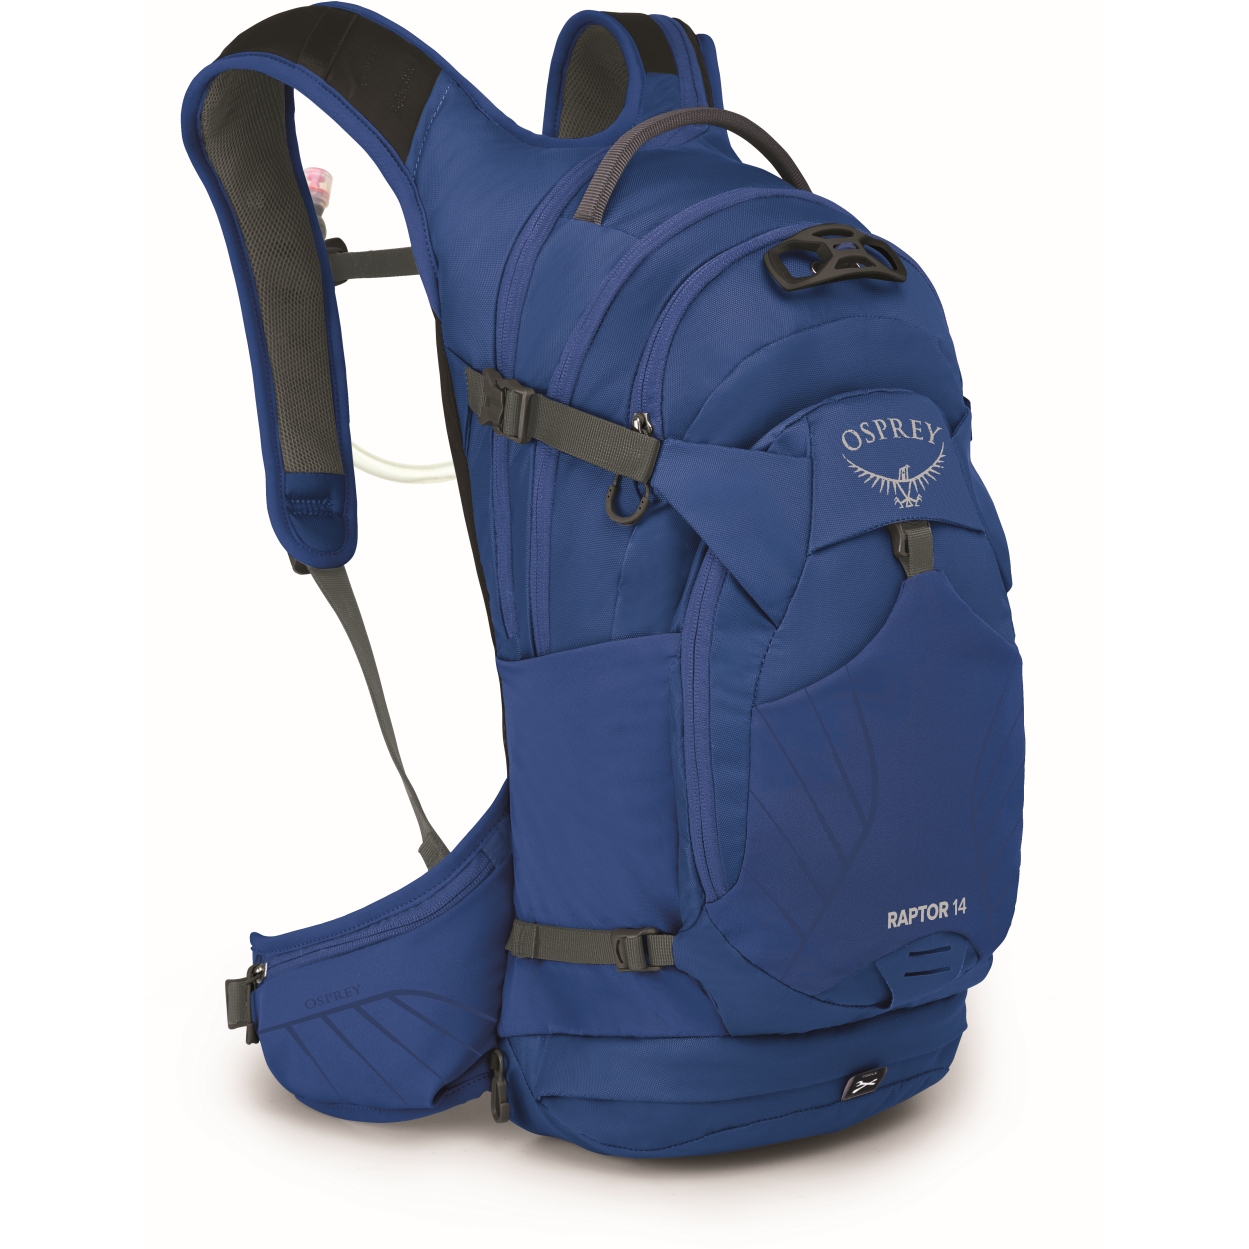 Productfoto van Osprey Raptor 14 Backpack + Hydration Pack - Postal Blue